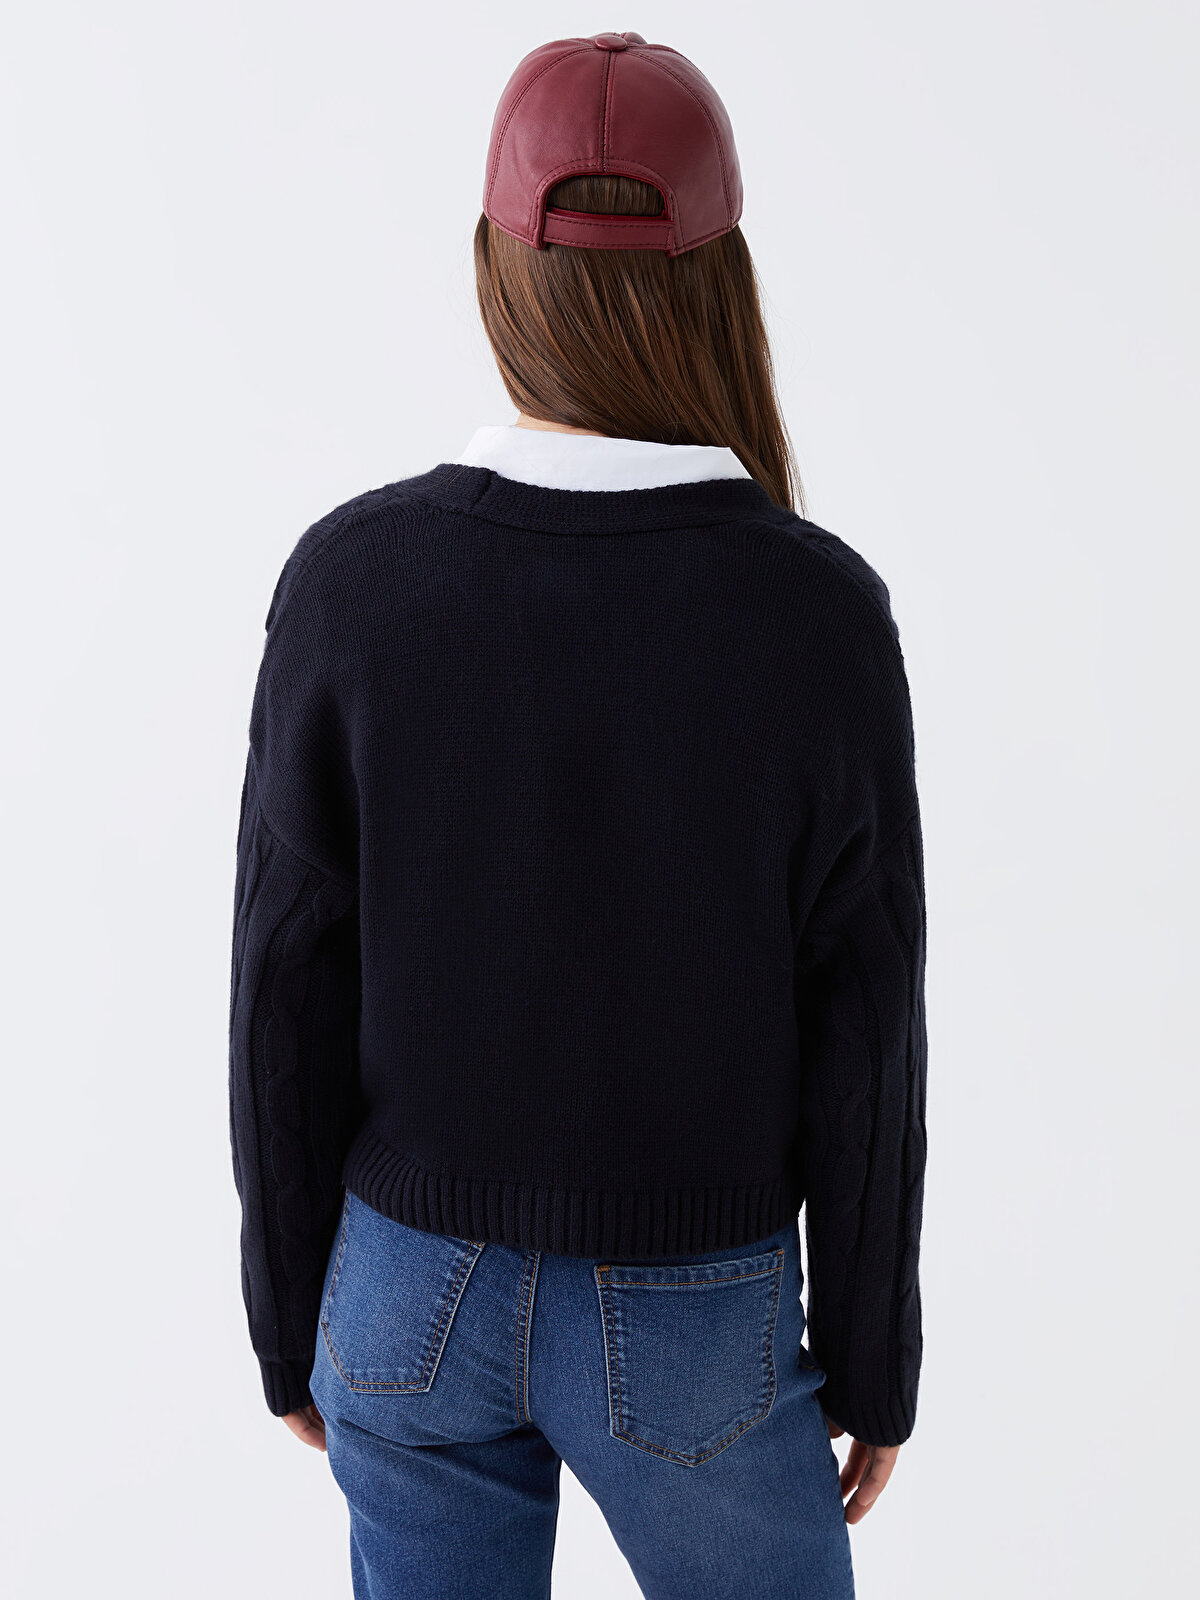 V Neck Self Patterned Long Sleeve Crop Women's Knitwear Cardigan 